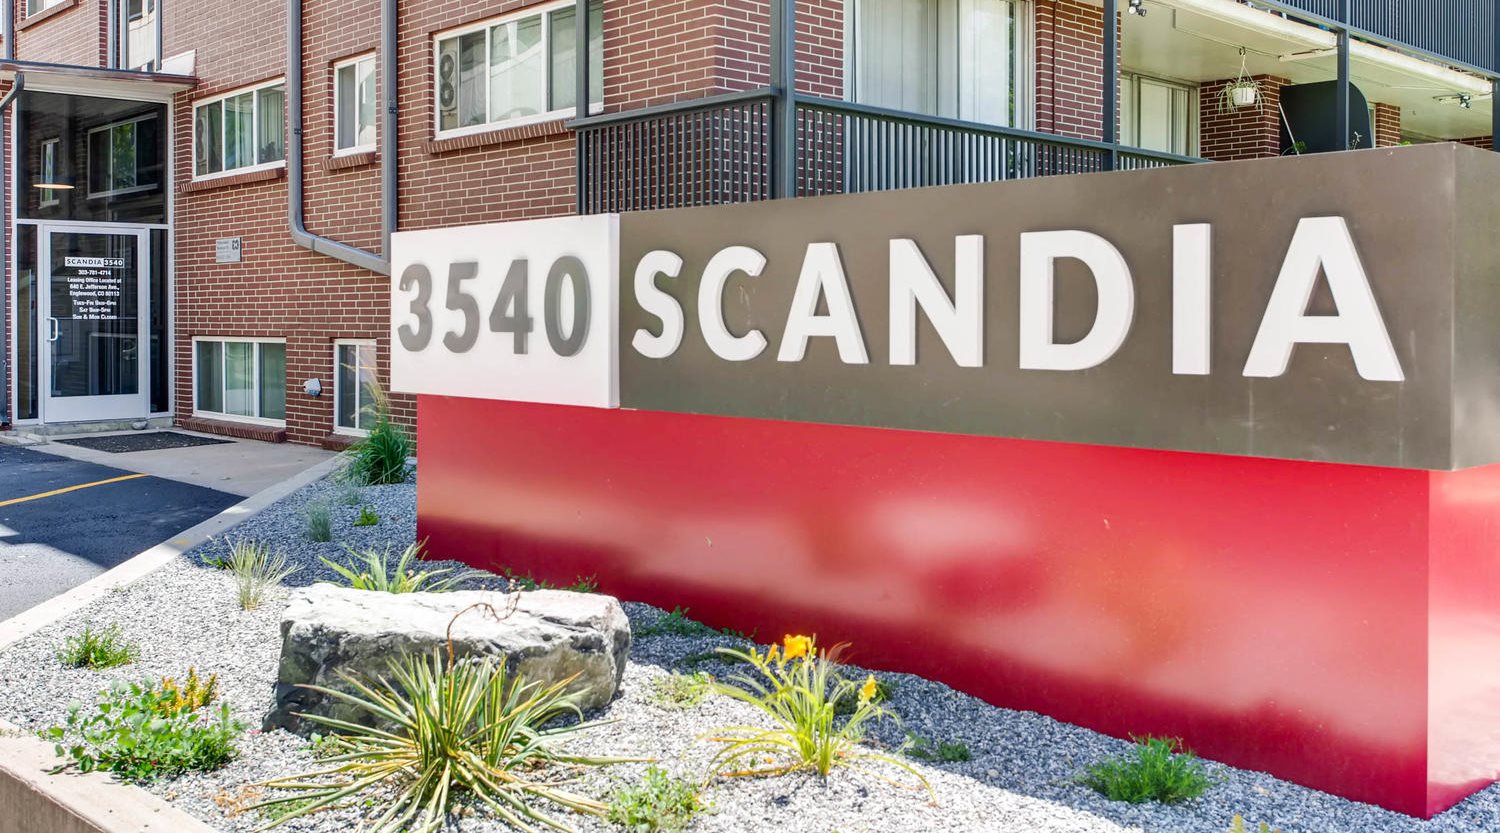 Scandia Apartments Monument Sign